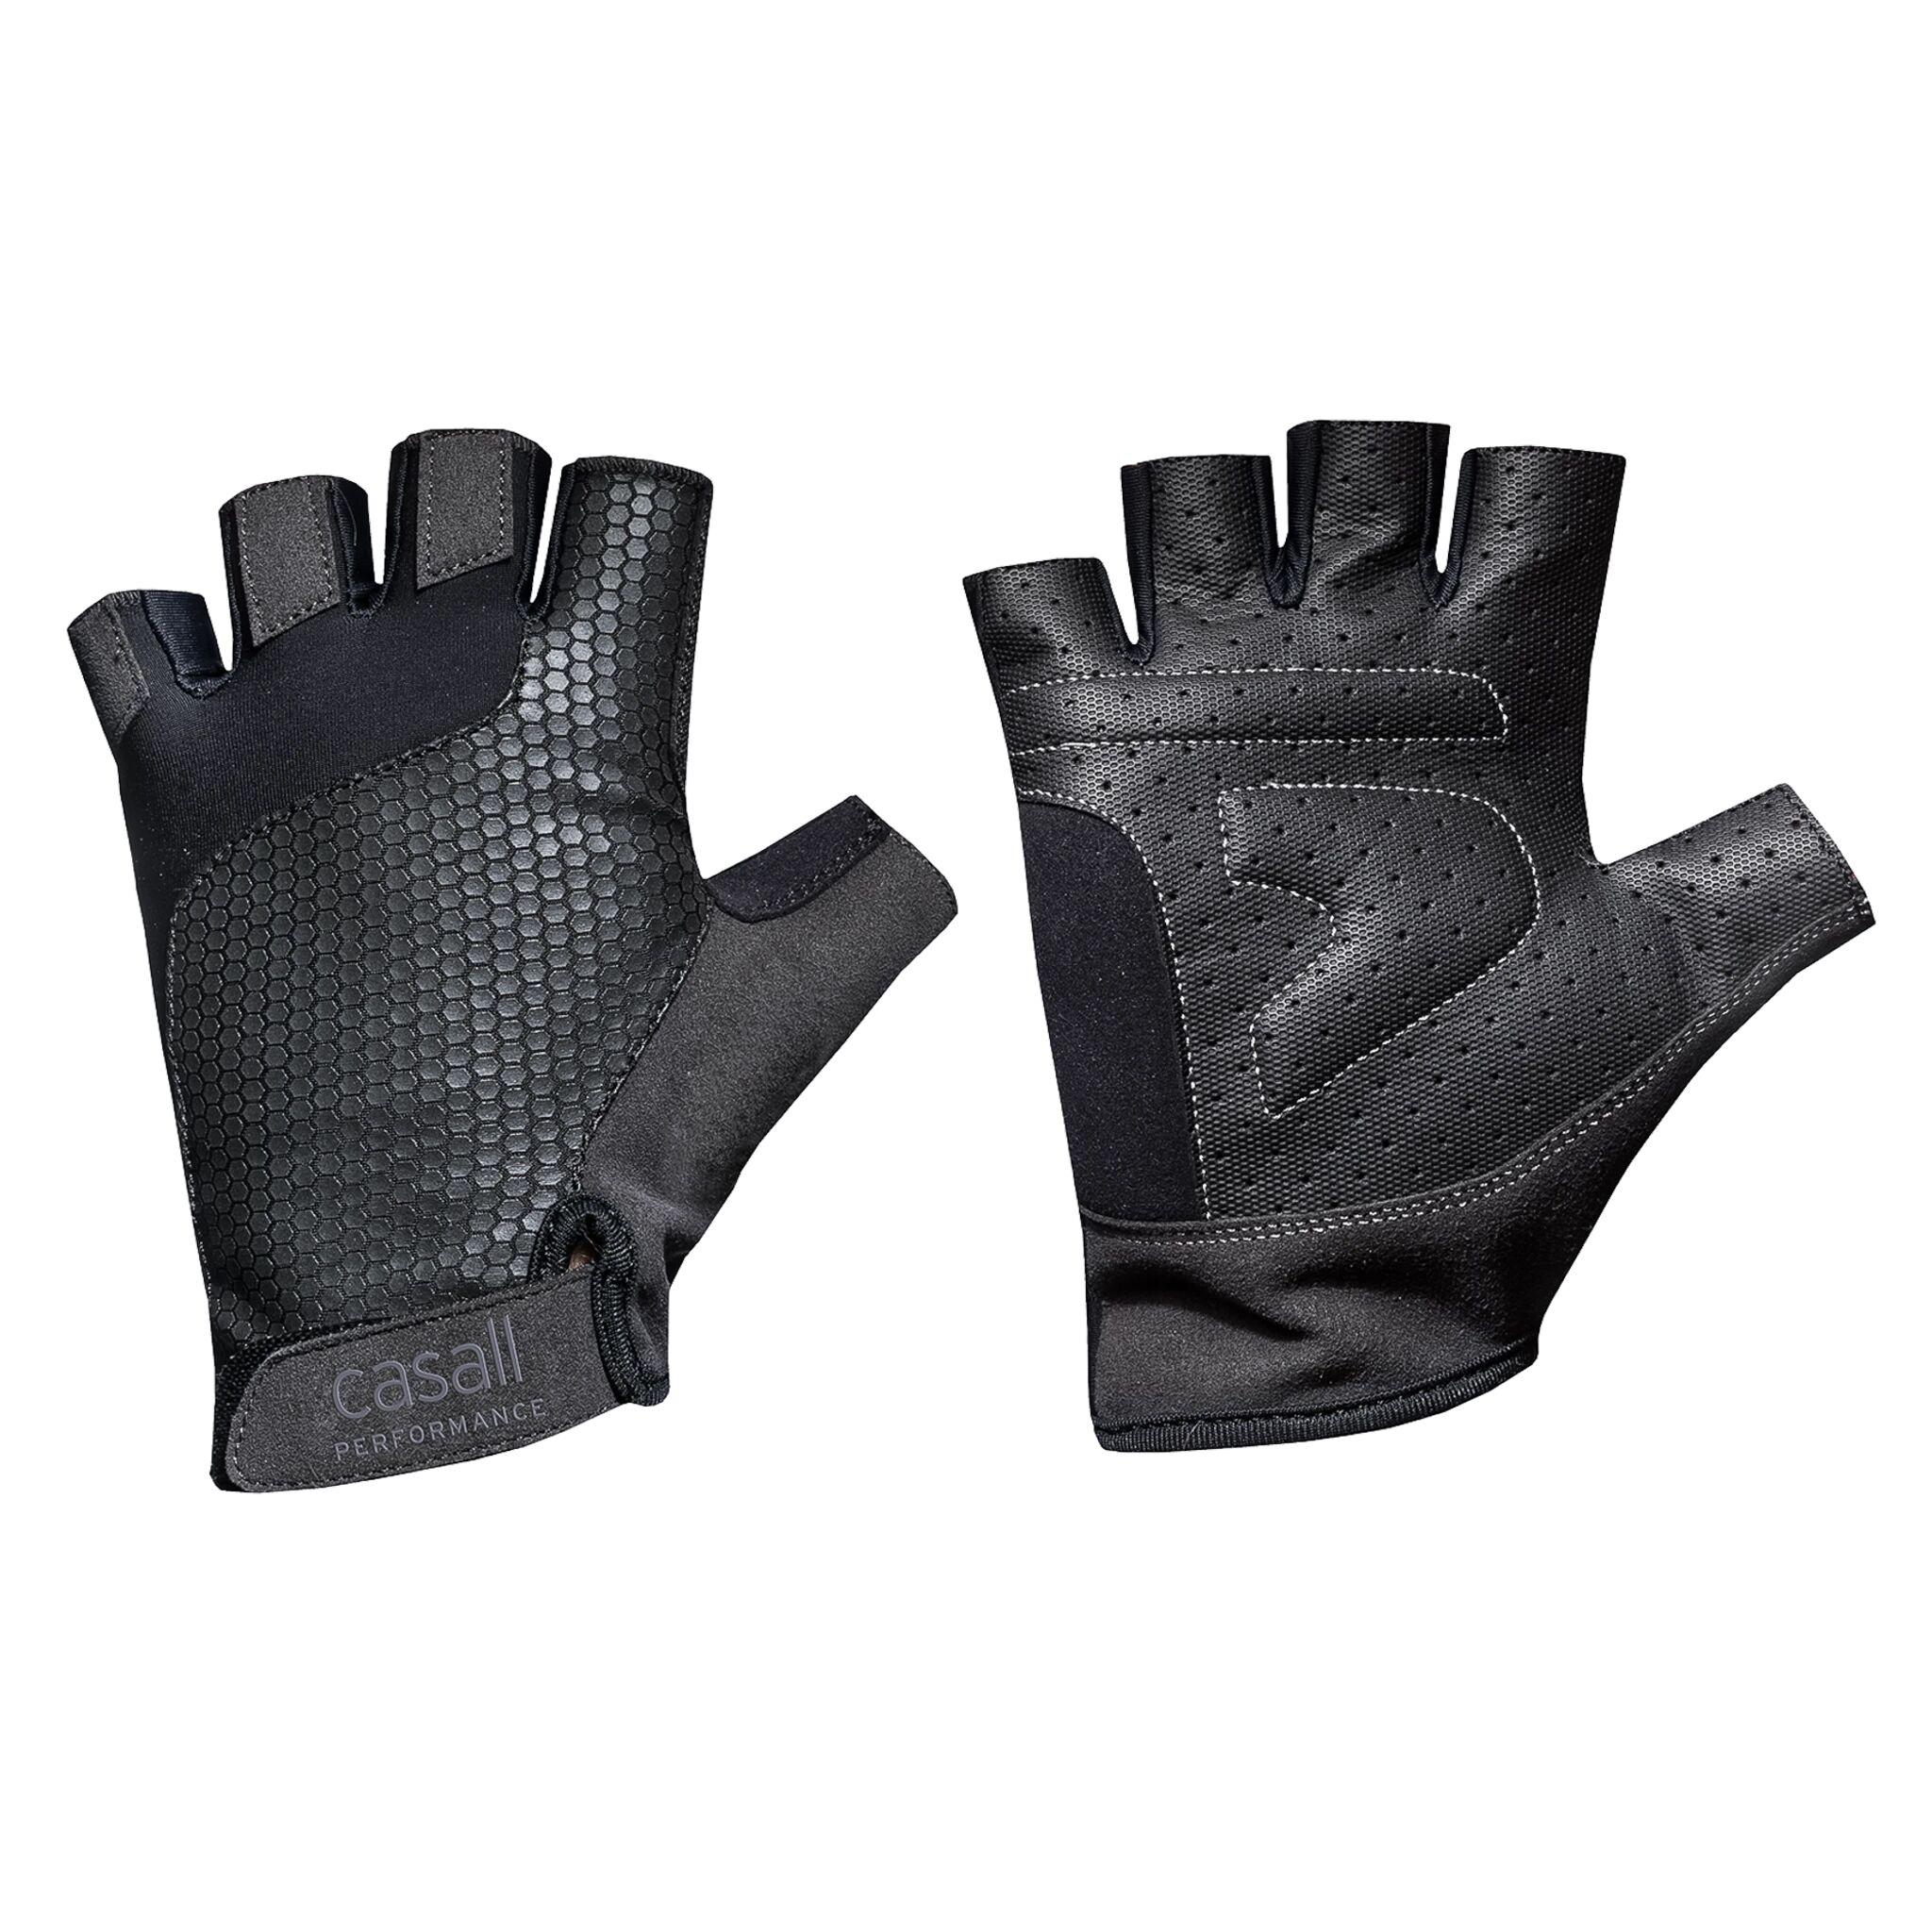 Casall PRF Excercise Glove Short, treningshansker XS BLACK